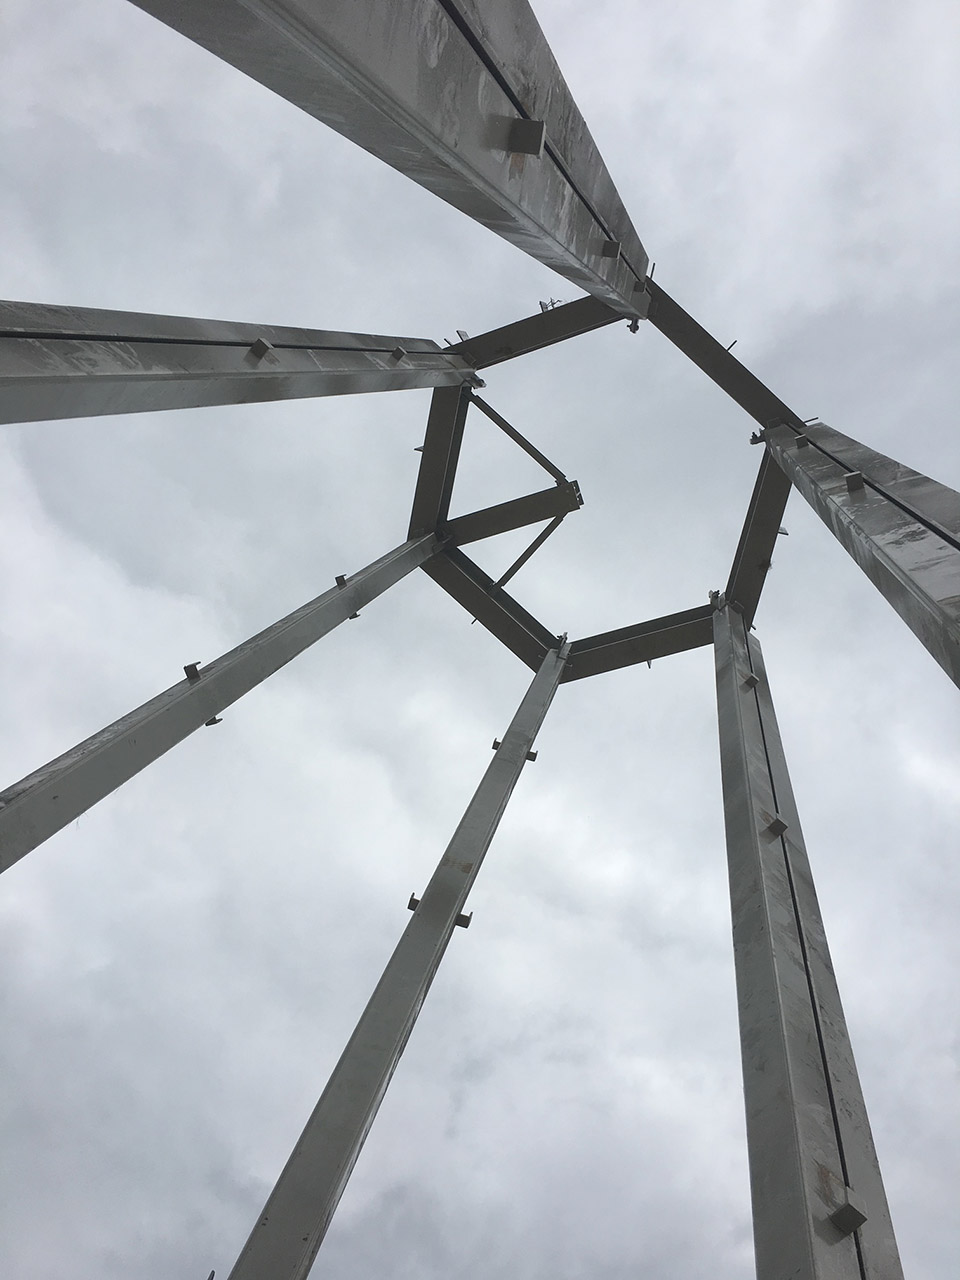 印第安纳大学钟琴塔，美国/印第安纳大学两百周年校庆的纪念钟塔-41